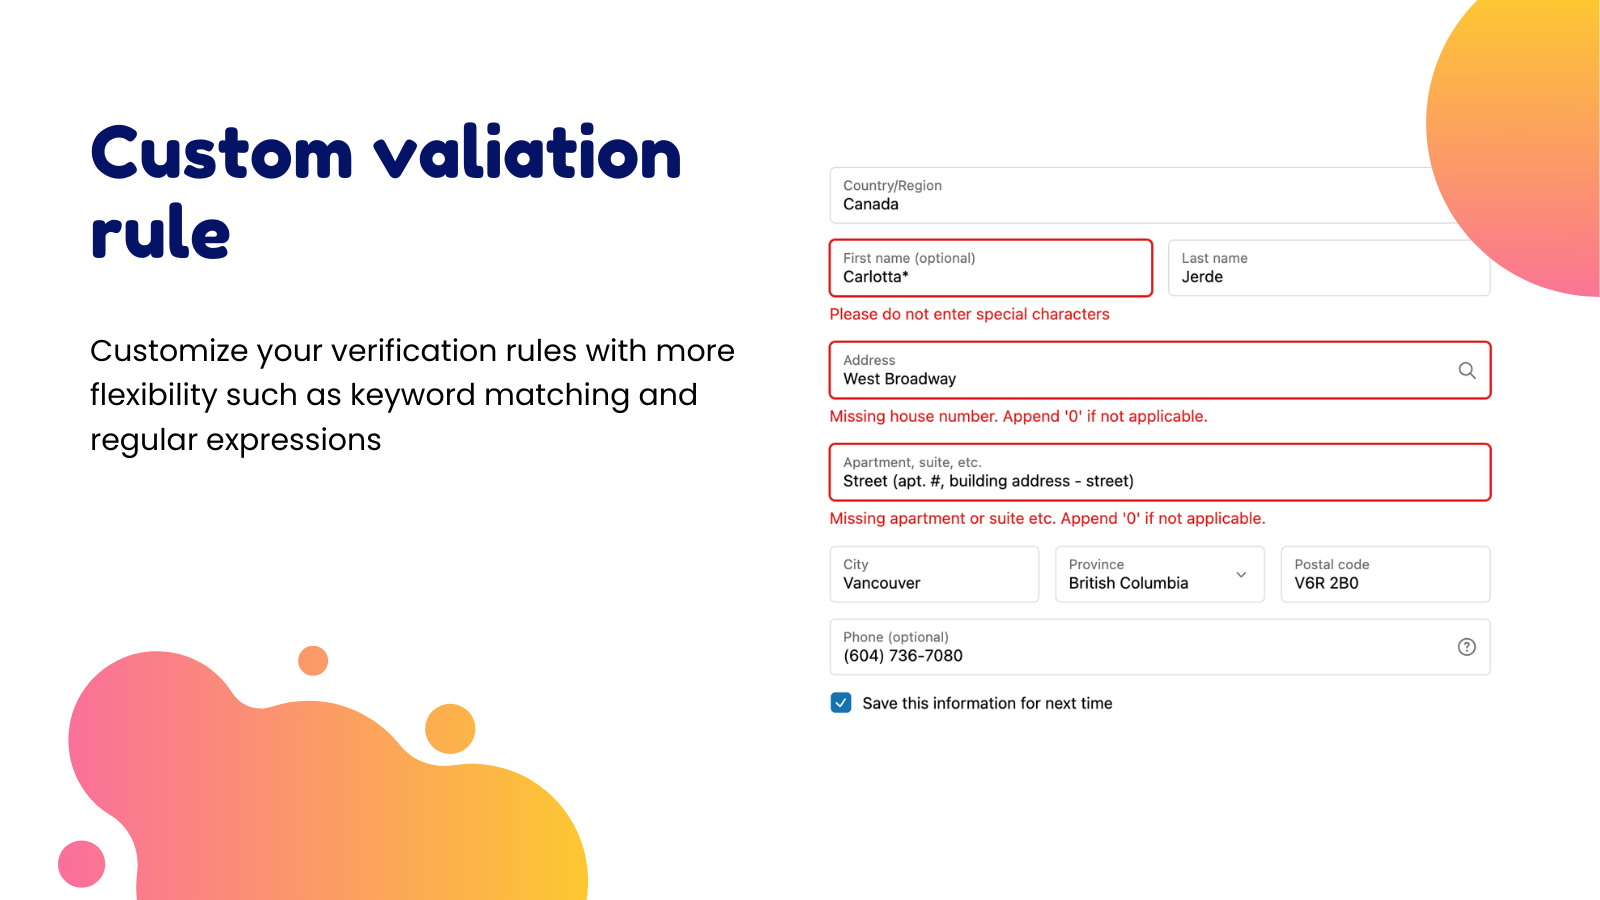 Personaliza las reglas de validación a través de palabras clave y expresiones regulares